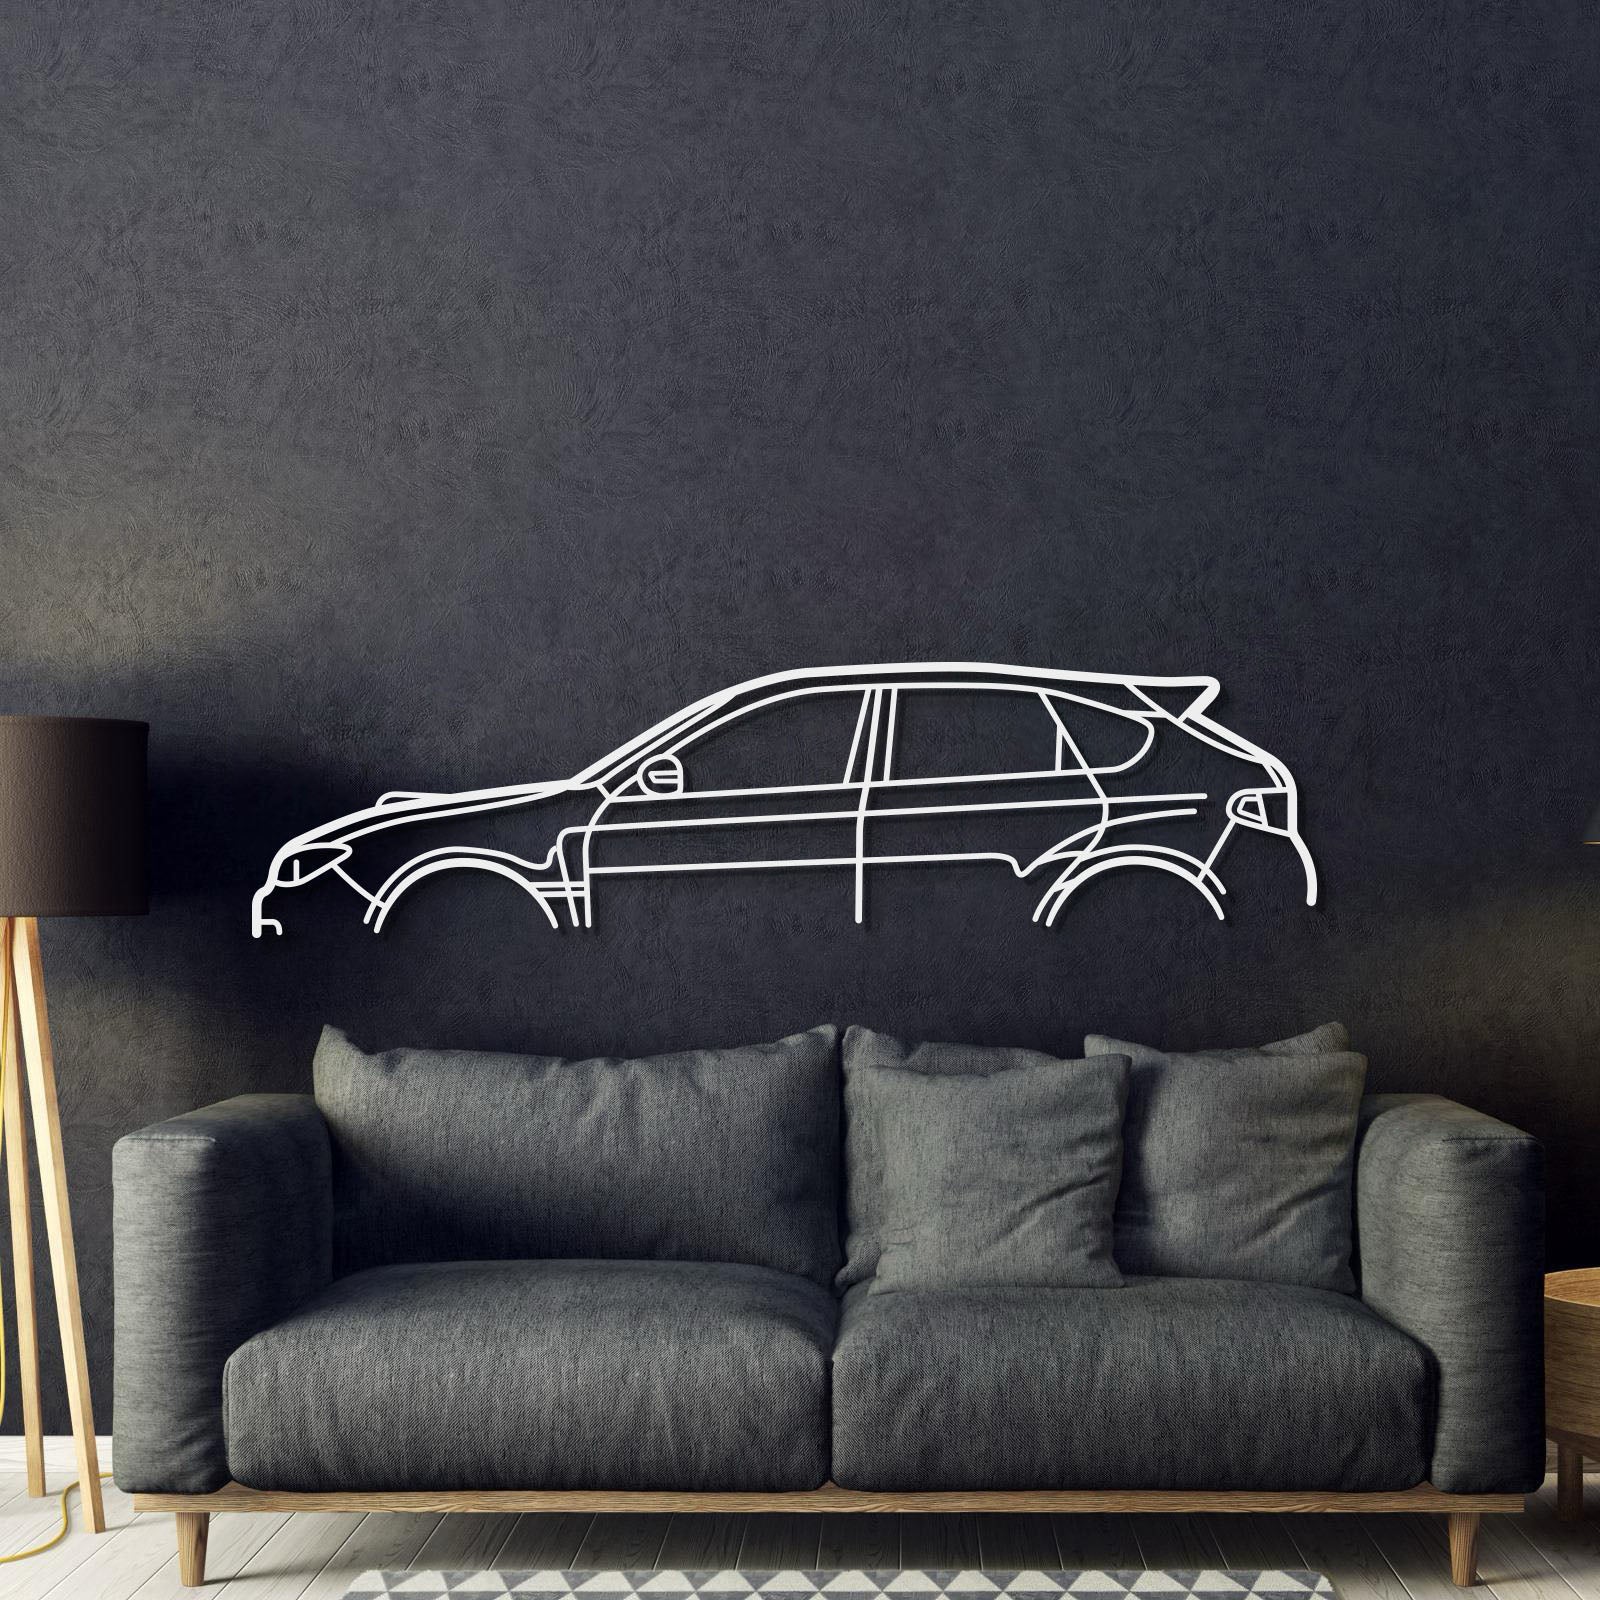 Impreza WRX STI GR Metal Car Wall Art - MT0994